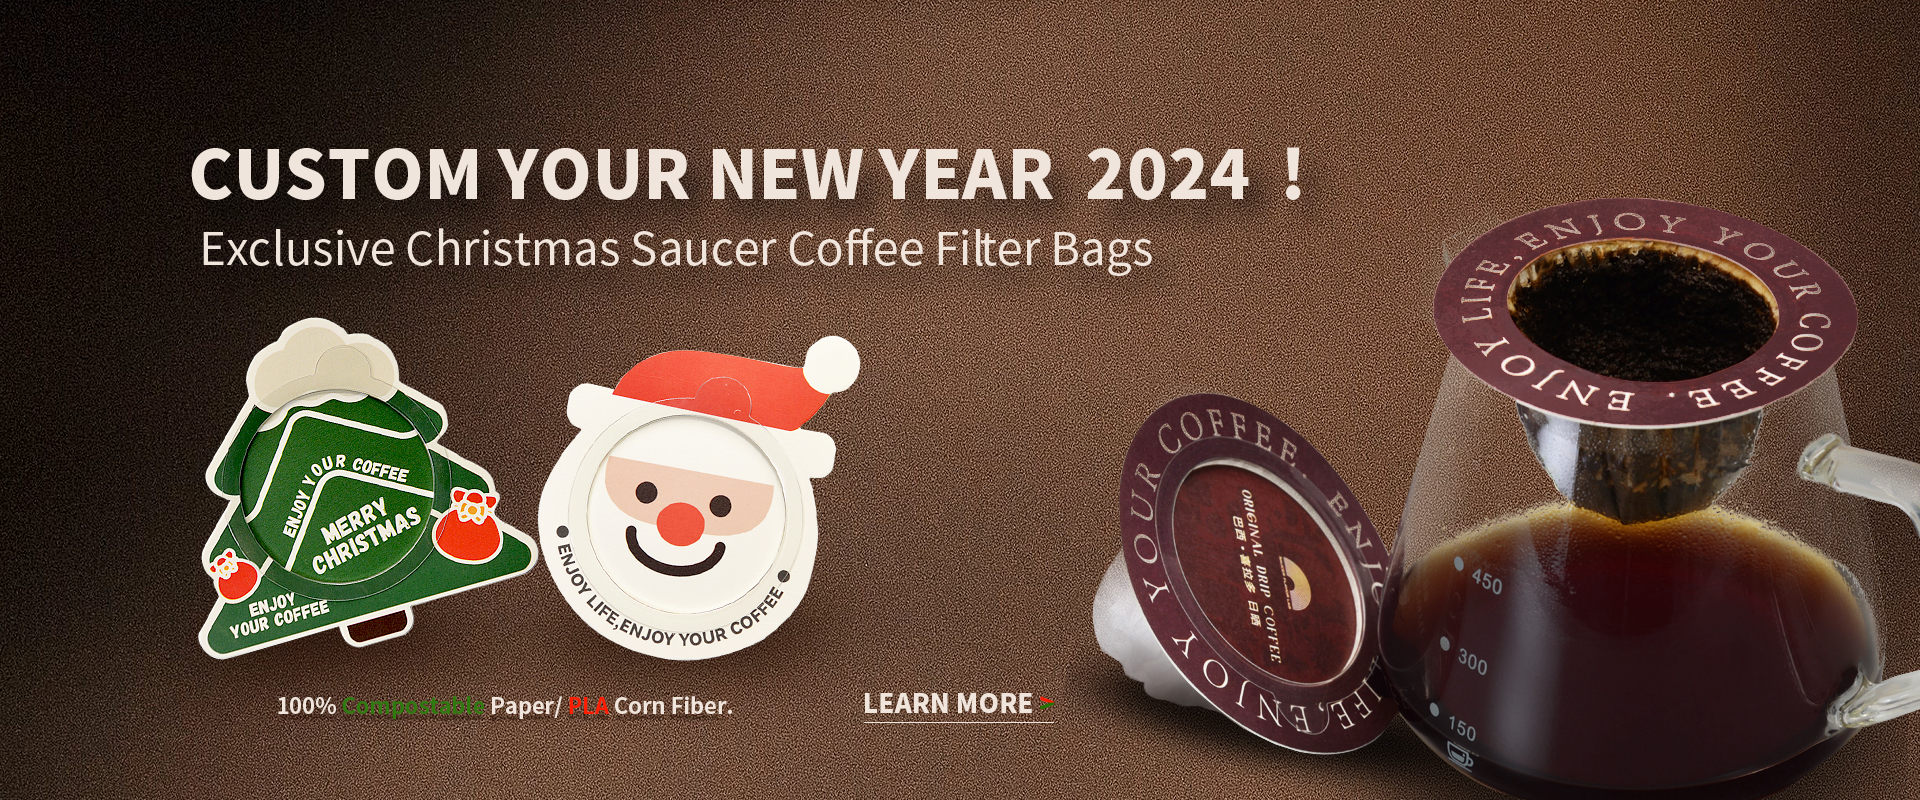 https://www.coffeeteabag.com/chritmas-fedora-eco-przyjazny-saucer-drip-coffee-filter-bag-product/